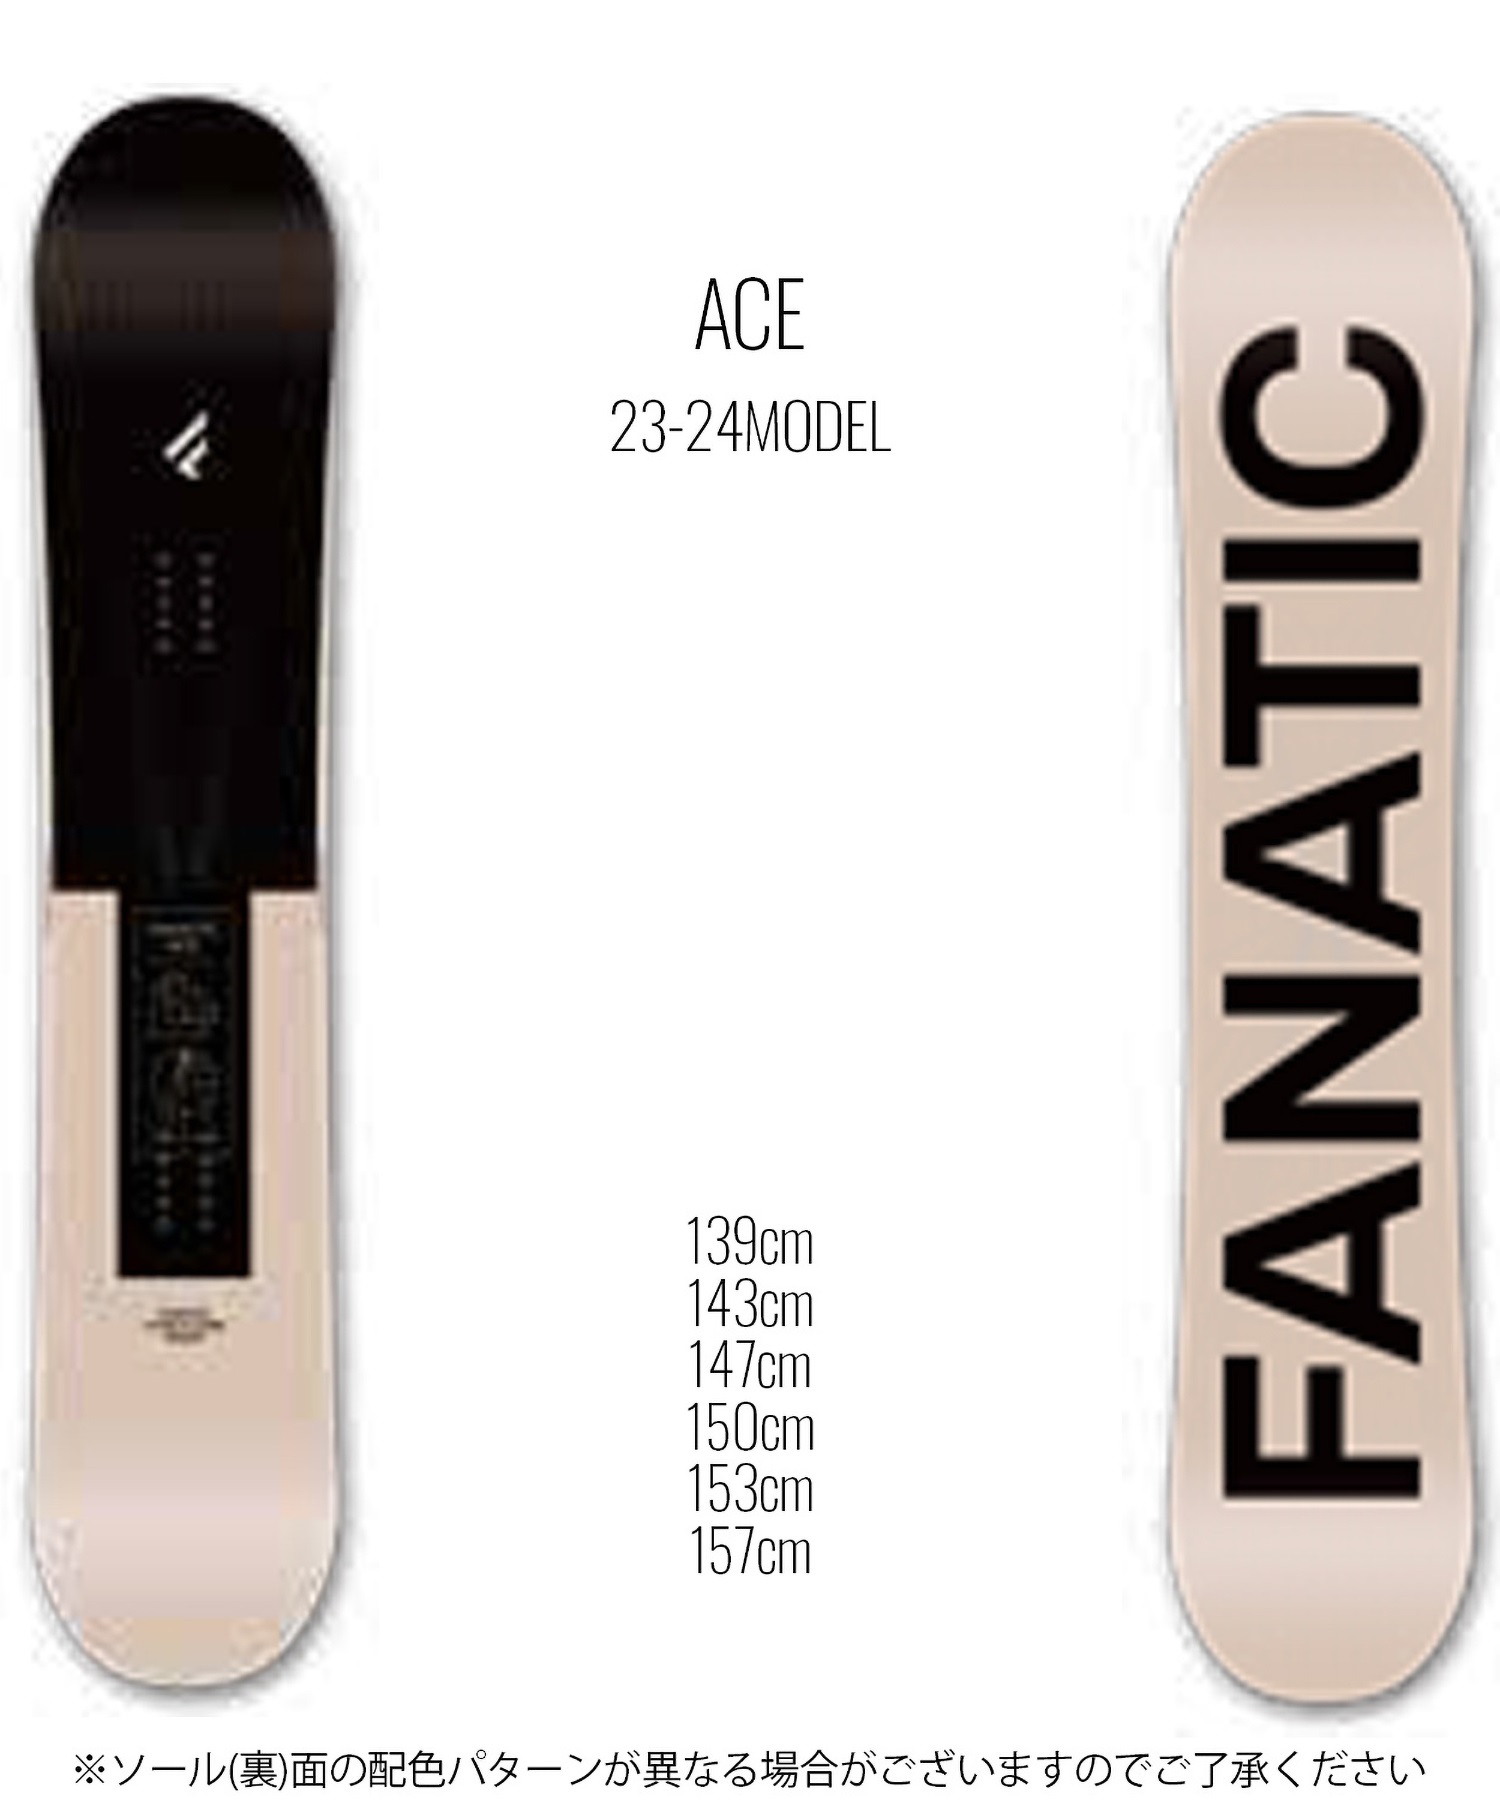 【再最終値下げ】FANATIC T-ONE 150cm 2018-2019モデルよろしくお願いいたします